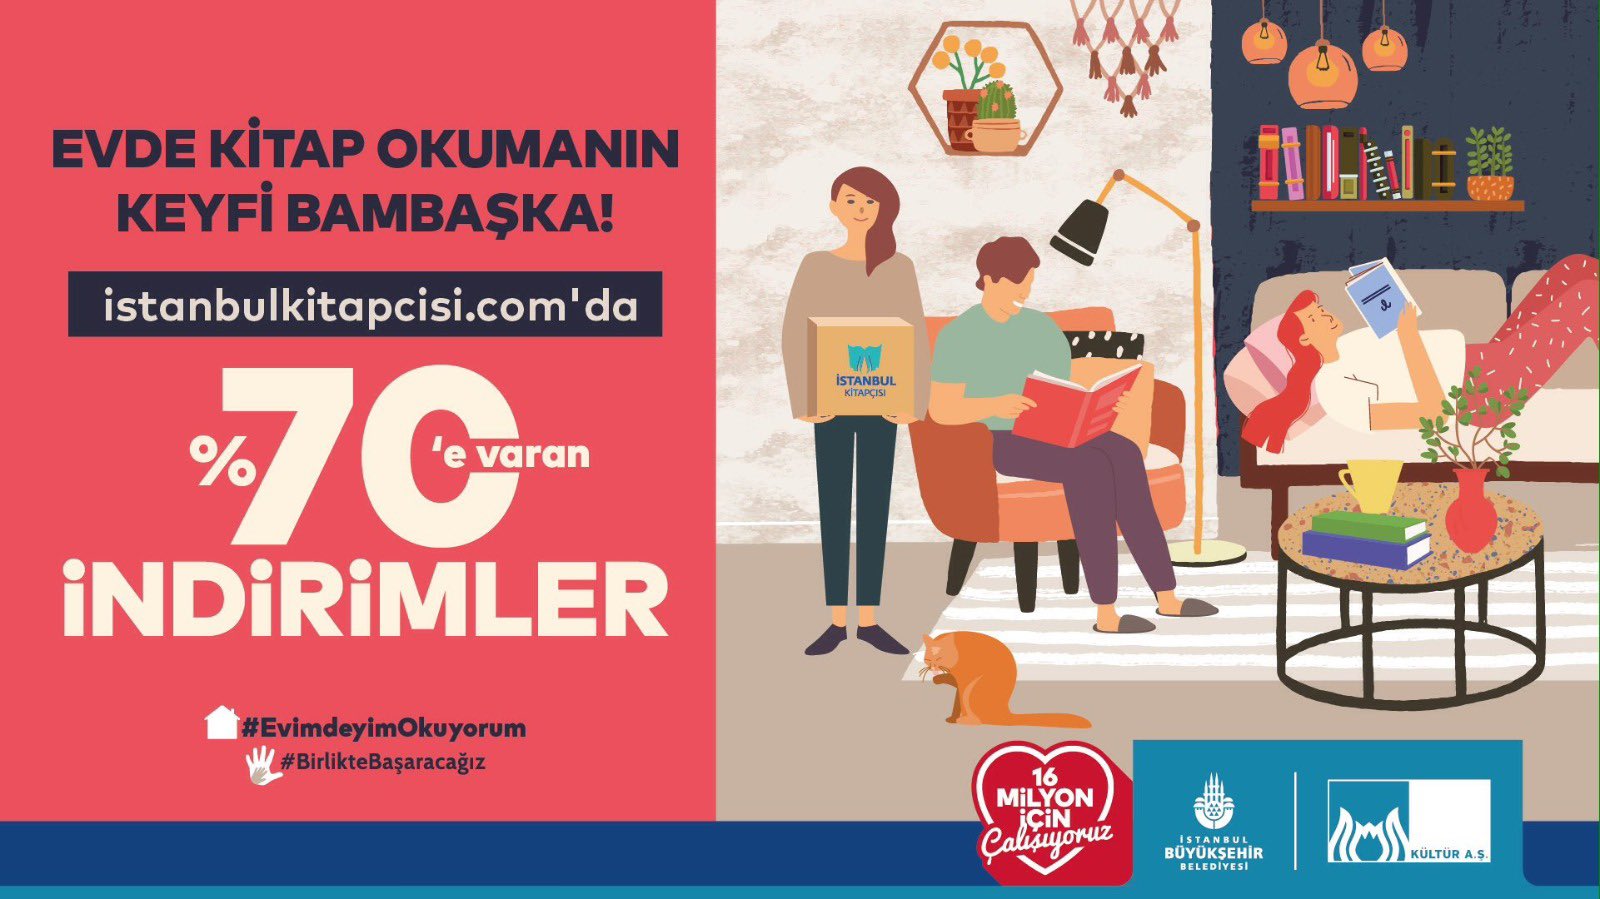 İstanbul Büyükşehir Belediyesi’nin kitap satış sitesi büyük ilgi görüyor